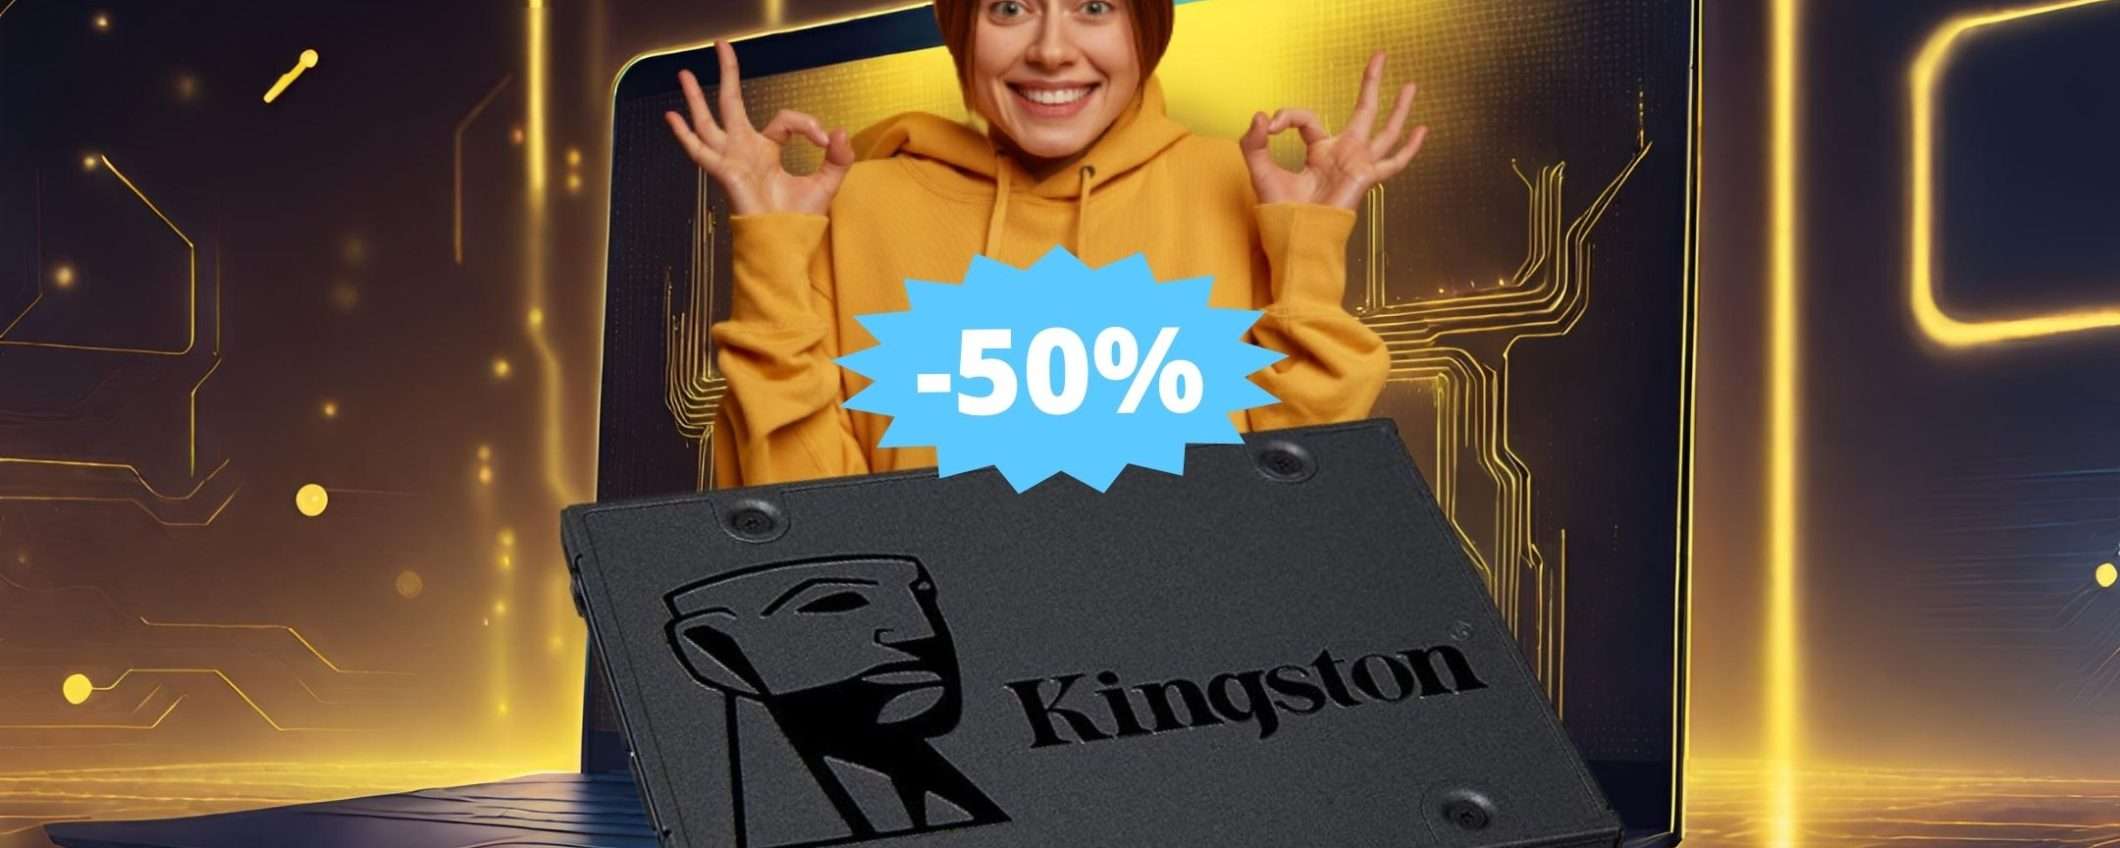 SSD Kingston A400: CROLLO del prezzo su Amazon (-50%)